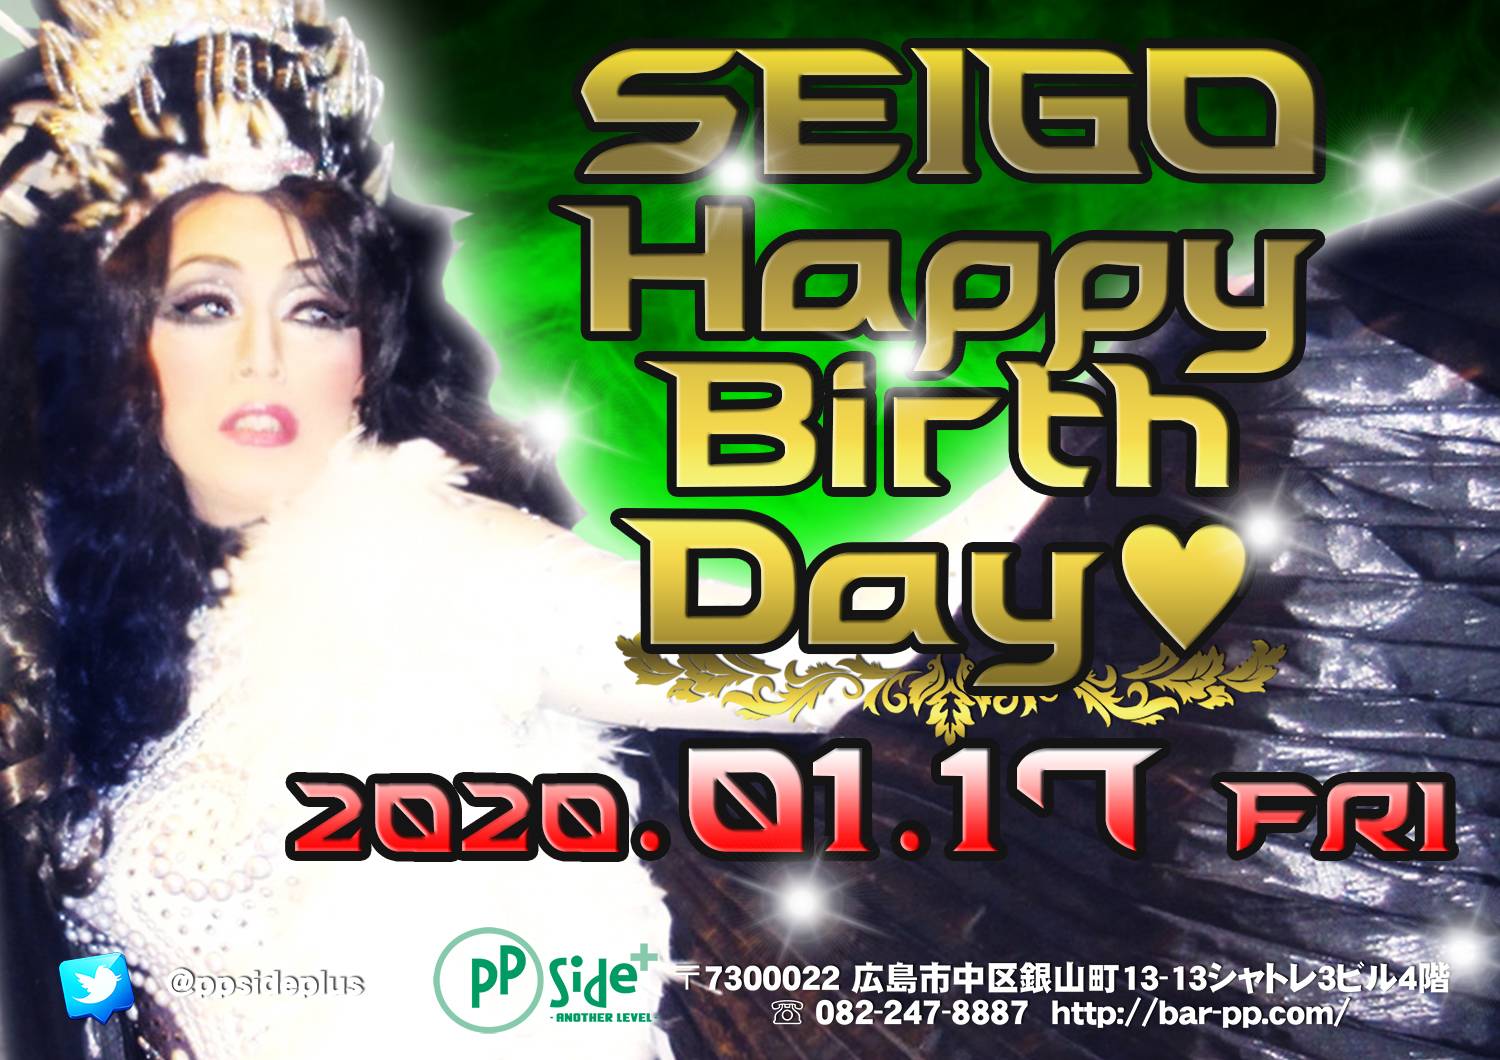 1月17日 金曜日 SEIGO誕生日パーティー⤴⤴⤴❣❗